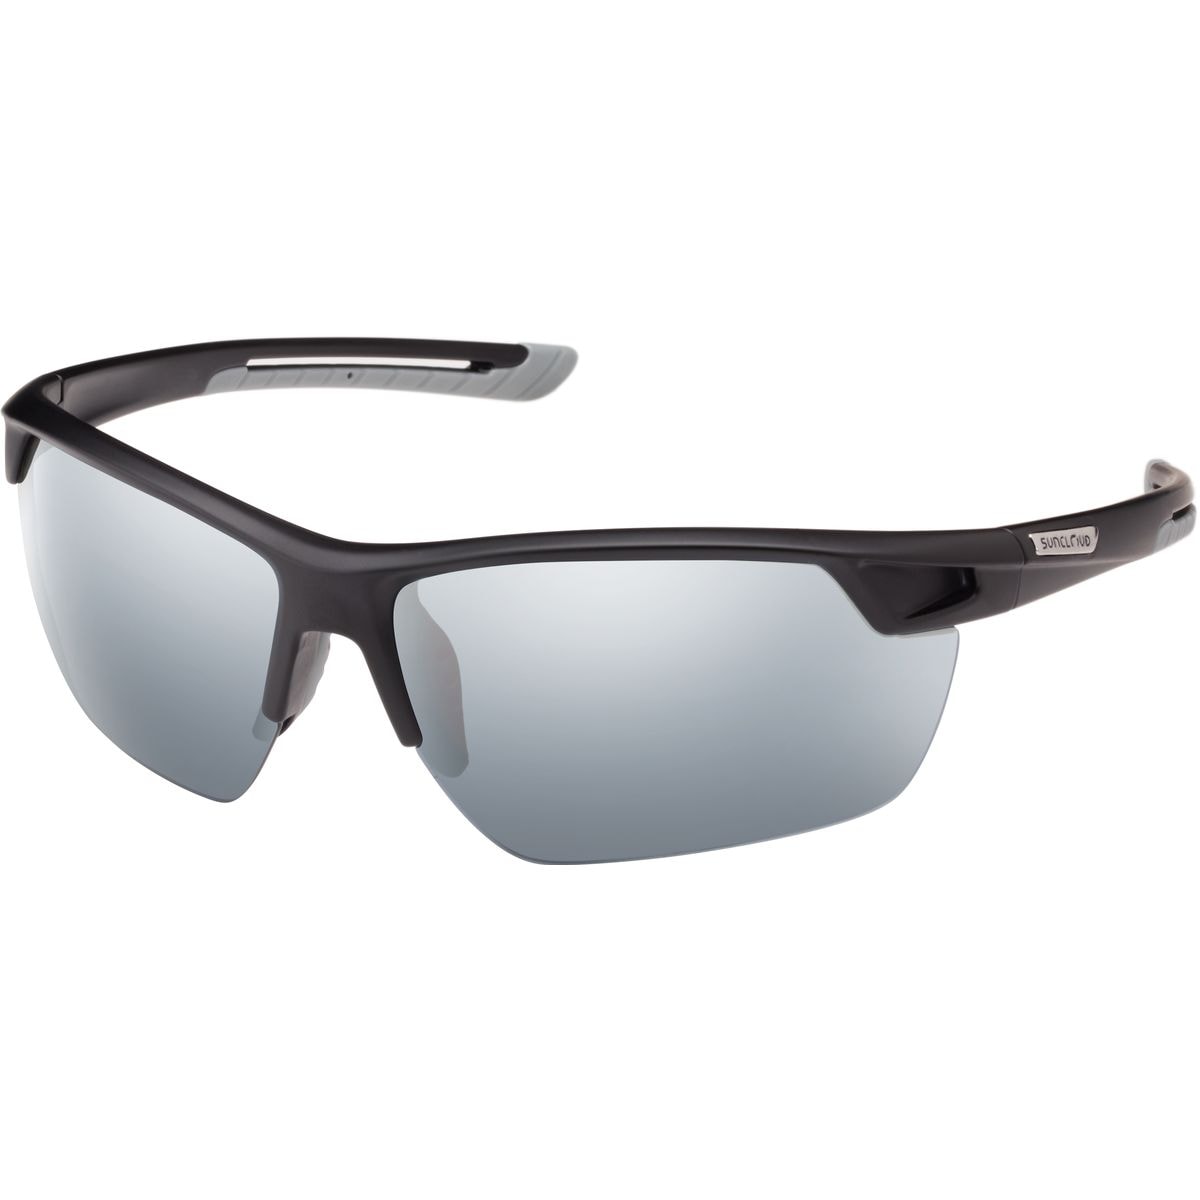 Поляризованные солнцезащитные очки contender Suncloud Polarized Optics, цвет matte black/silver mirror